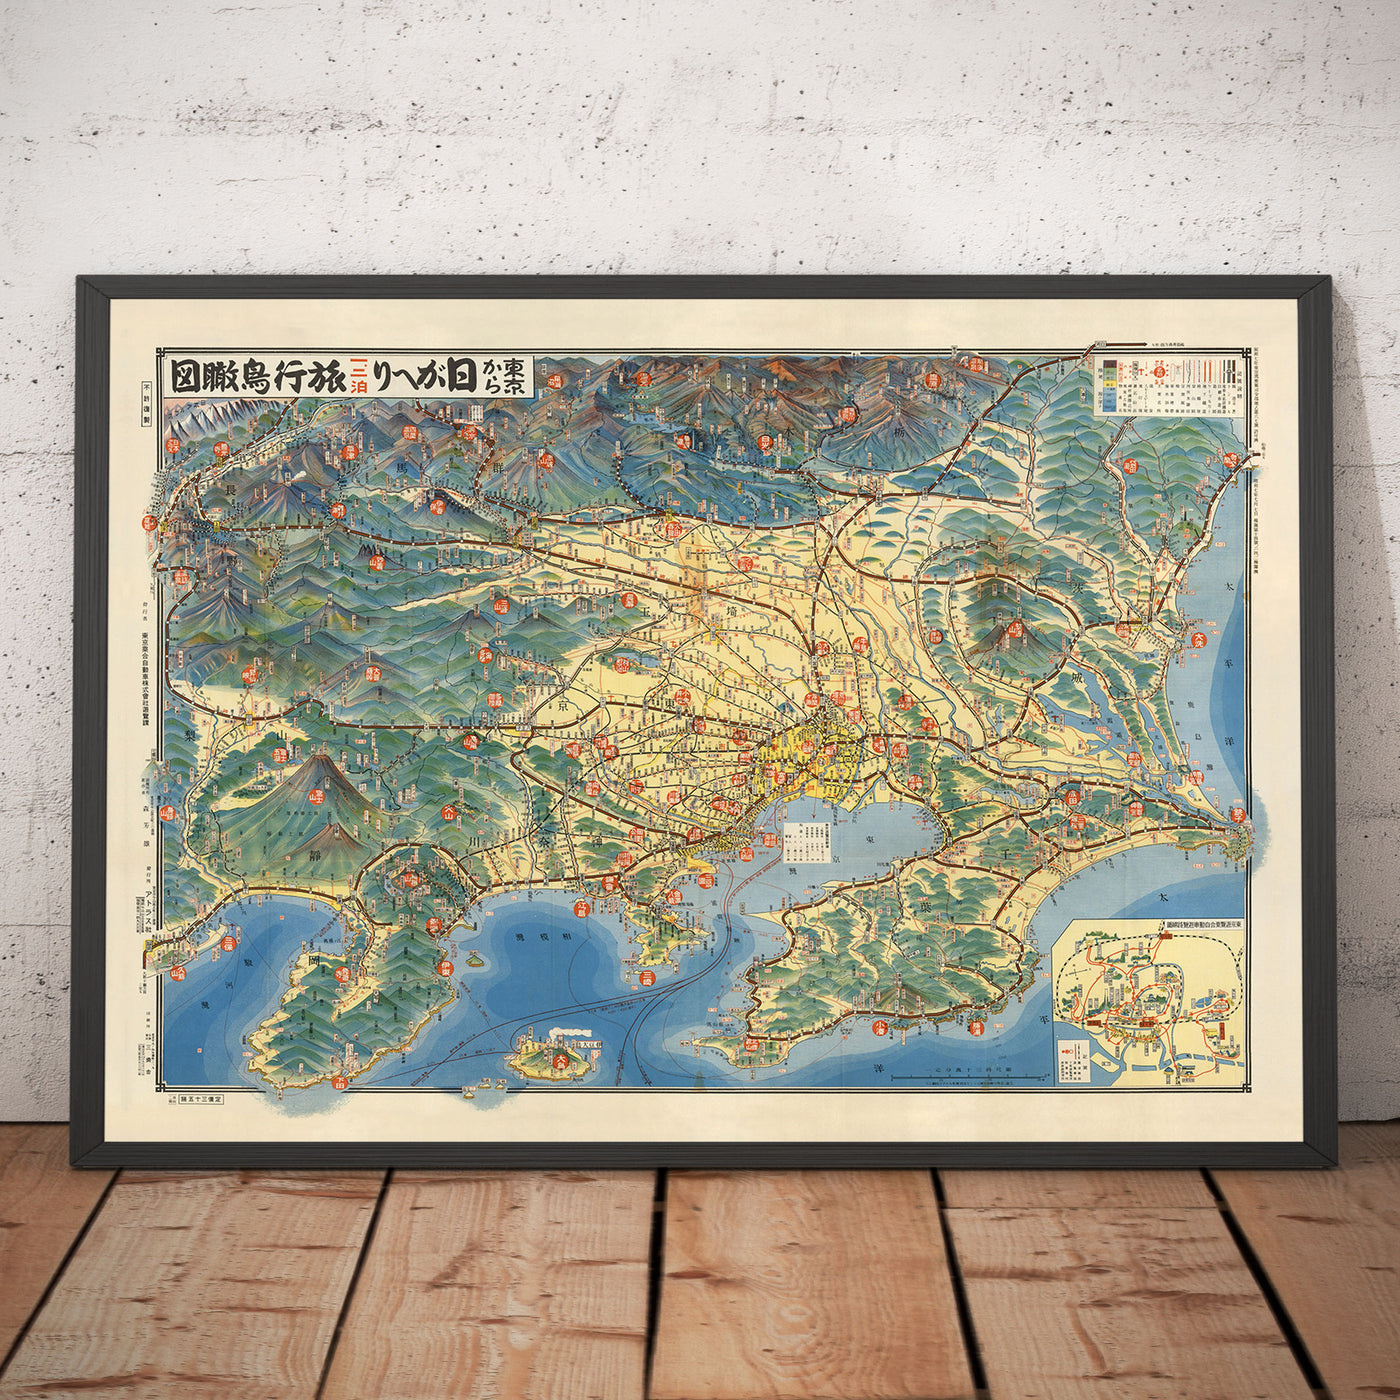 Antiguo mapa pictórico de Tokio en 1932 por Noriai Jidosha Co. - Chuo, Shinjuku, Koto, Meguro, Taito